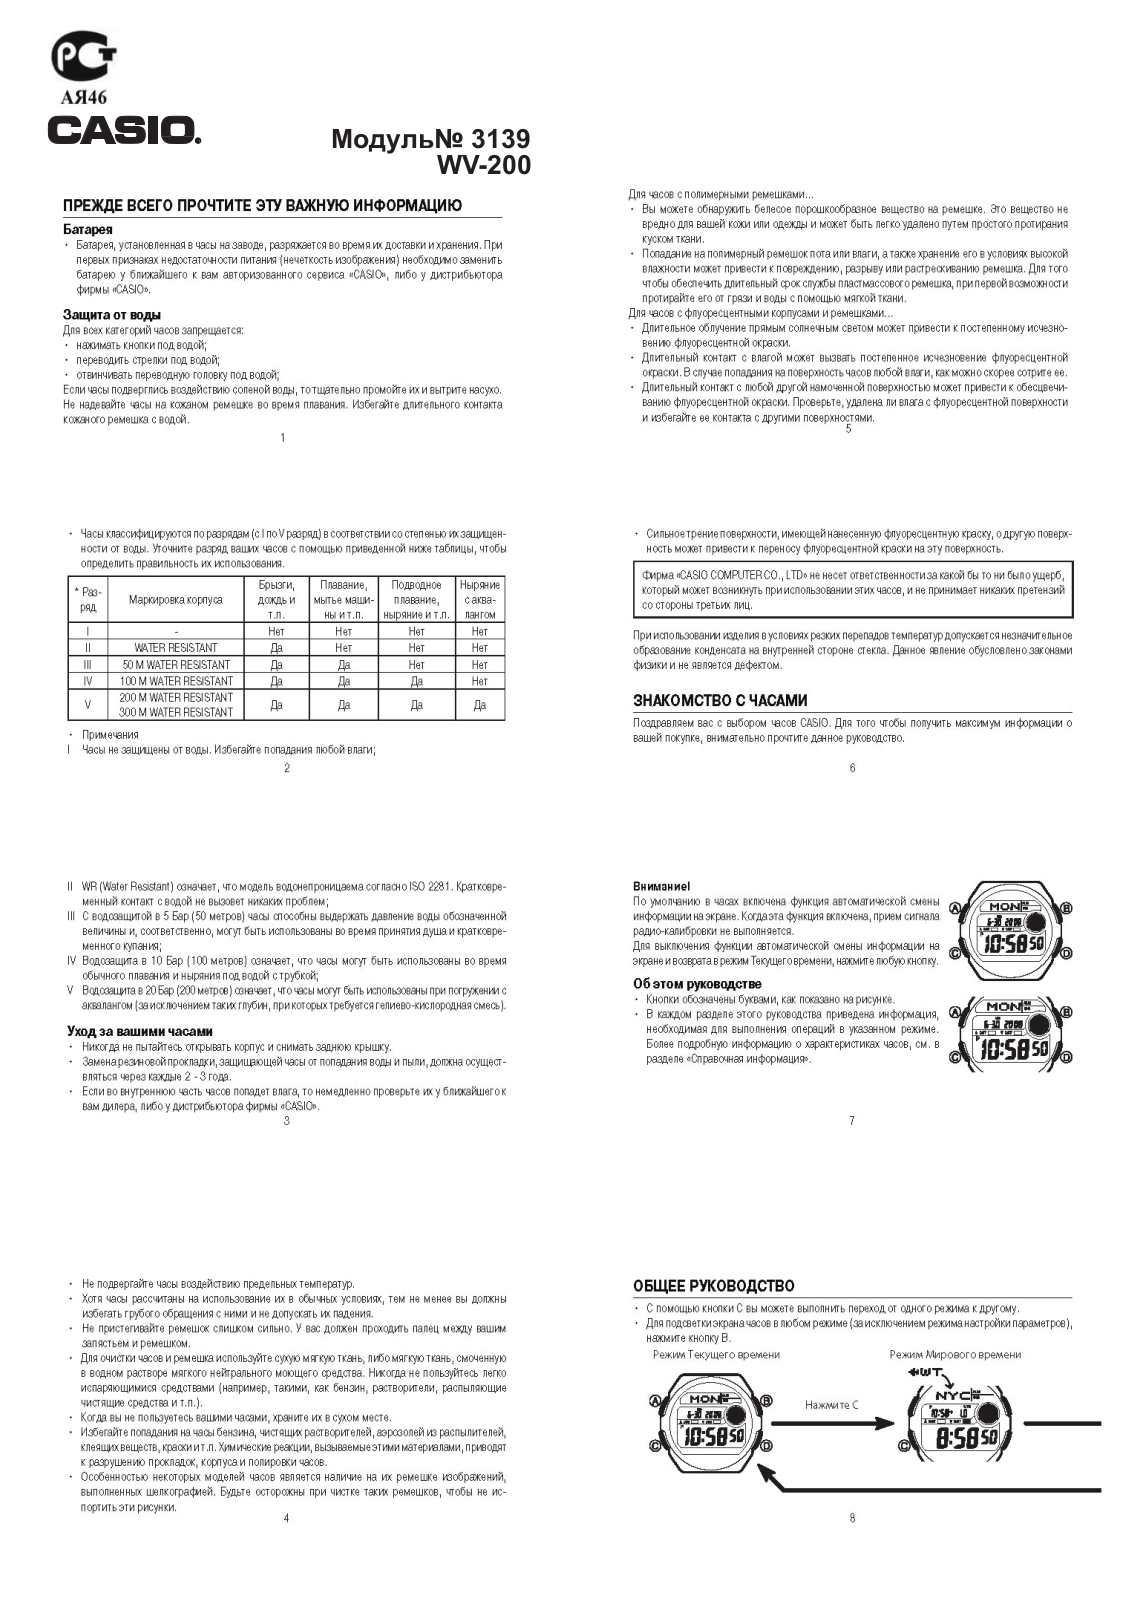 Casio WV-200DE-1A User Manual